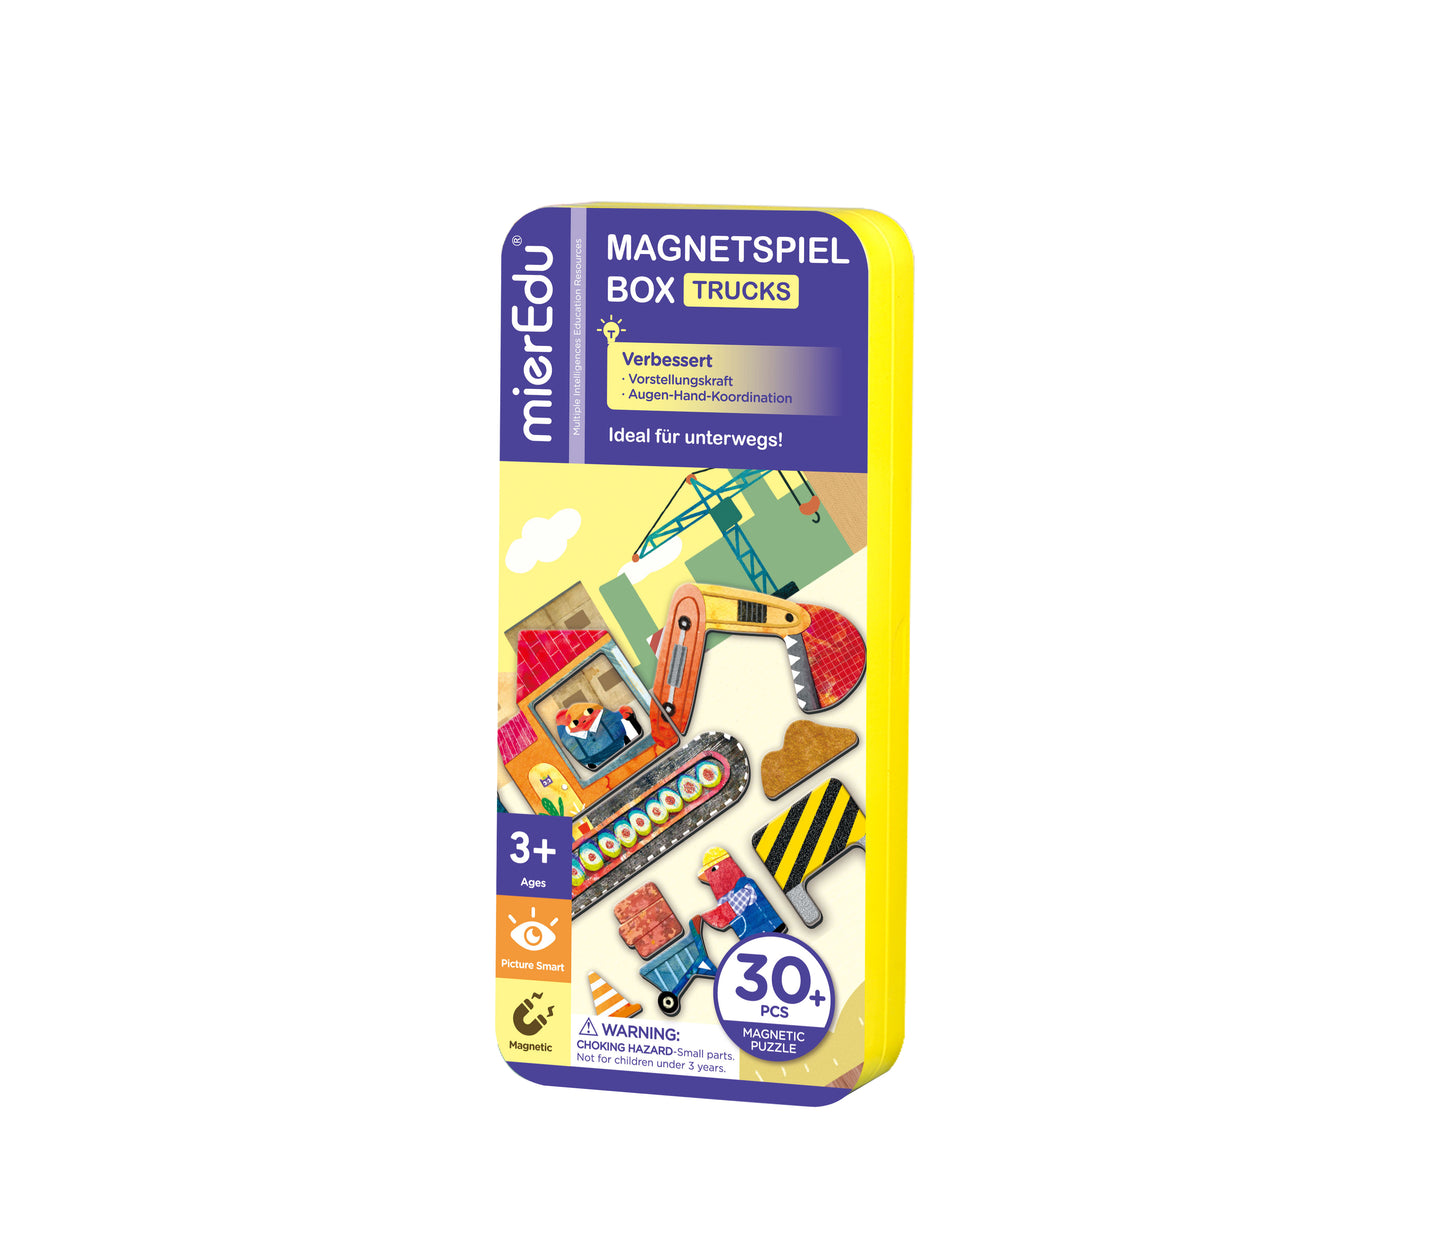 mierEdu Magnetspiel Box, Trucks,Fördert Motorik und Fantasie,Ideal für Zuhause und als Reisespiel für Kinder, Magnet Spielzeug